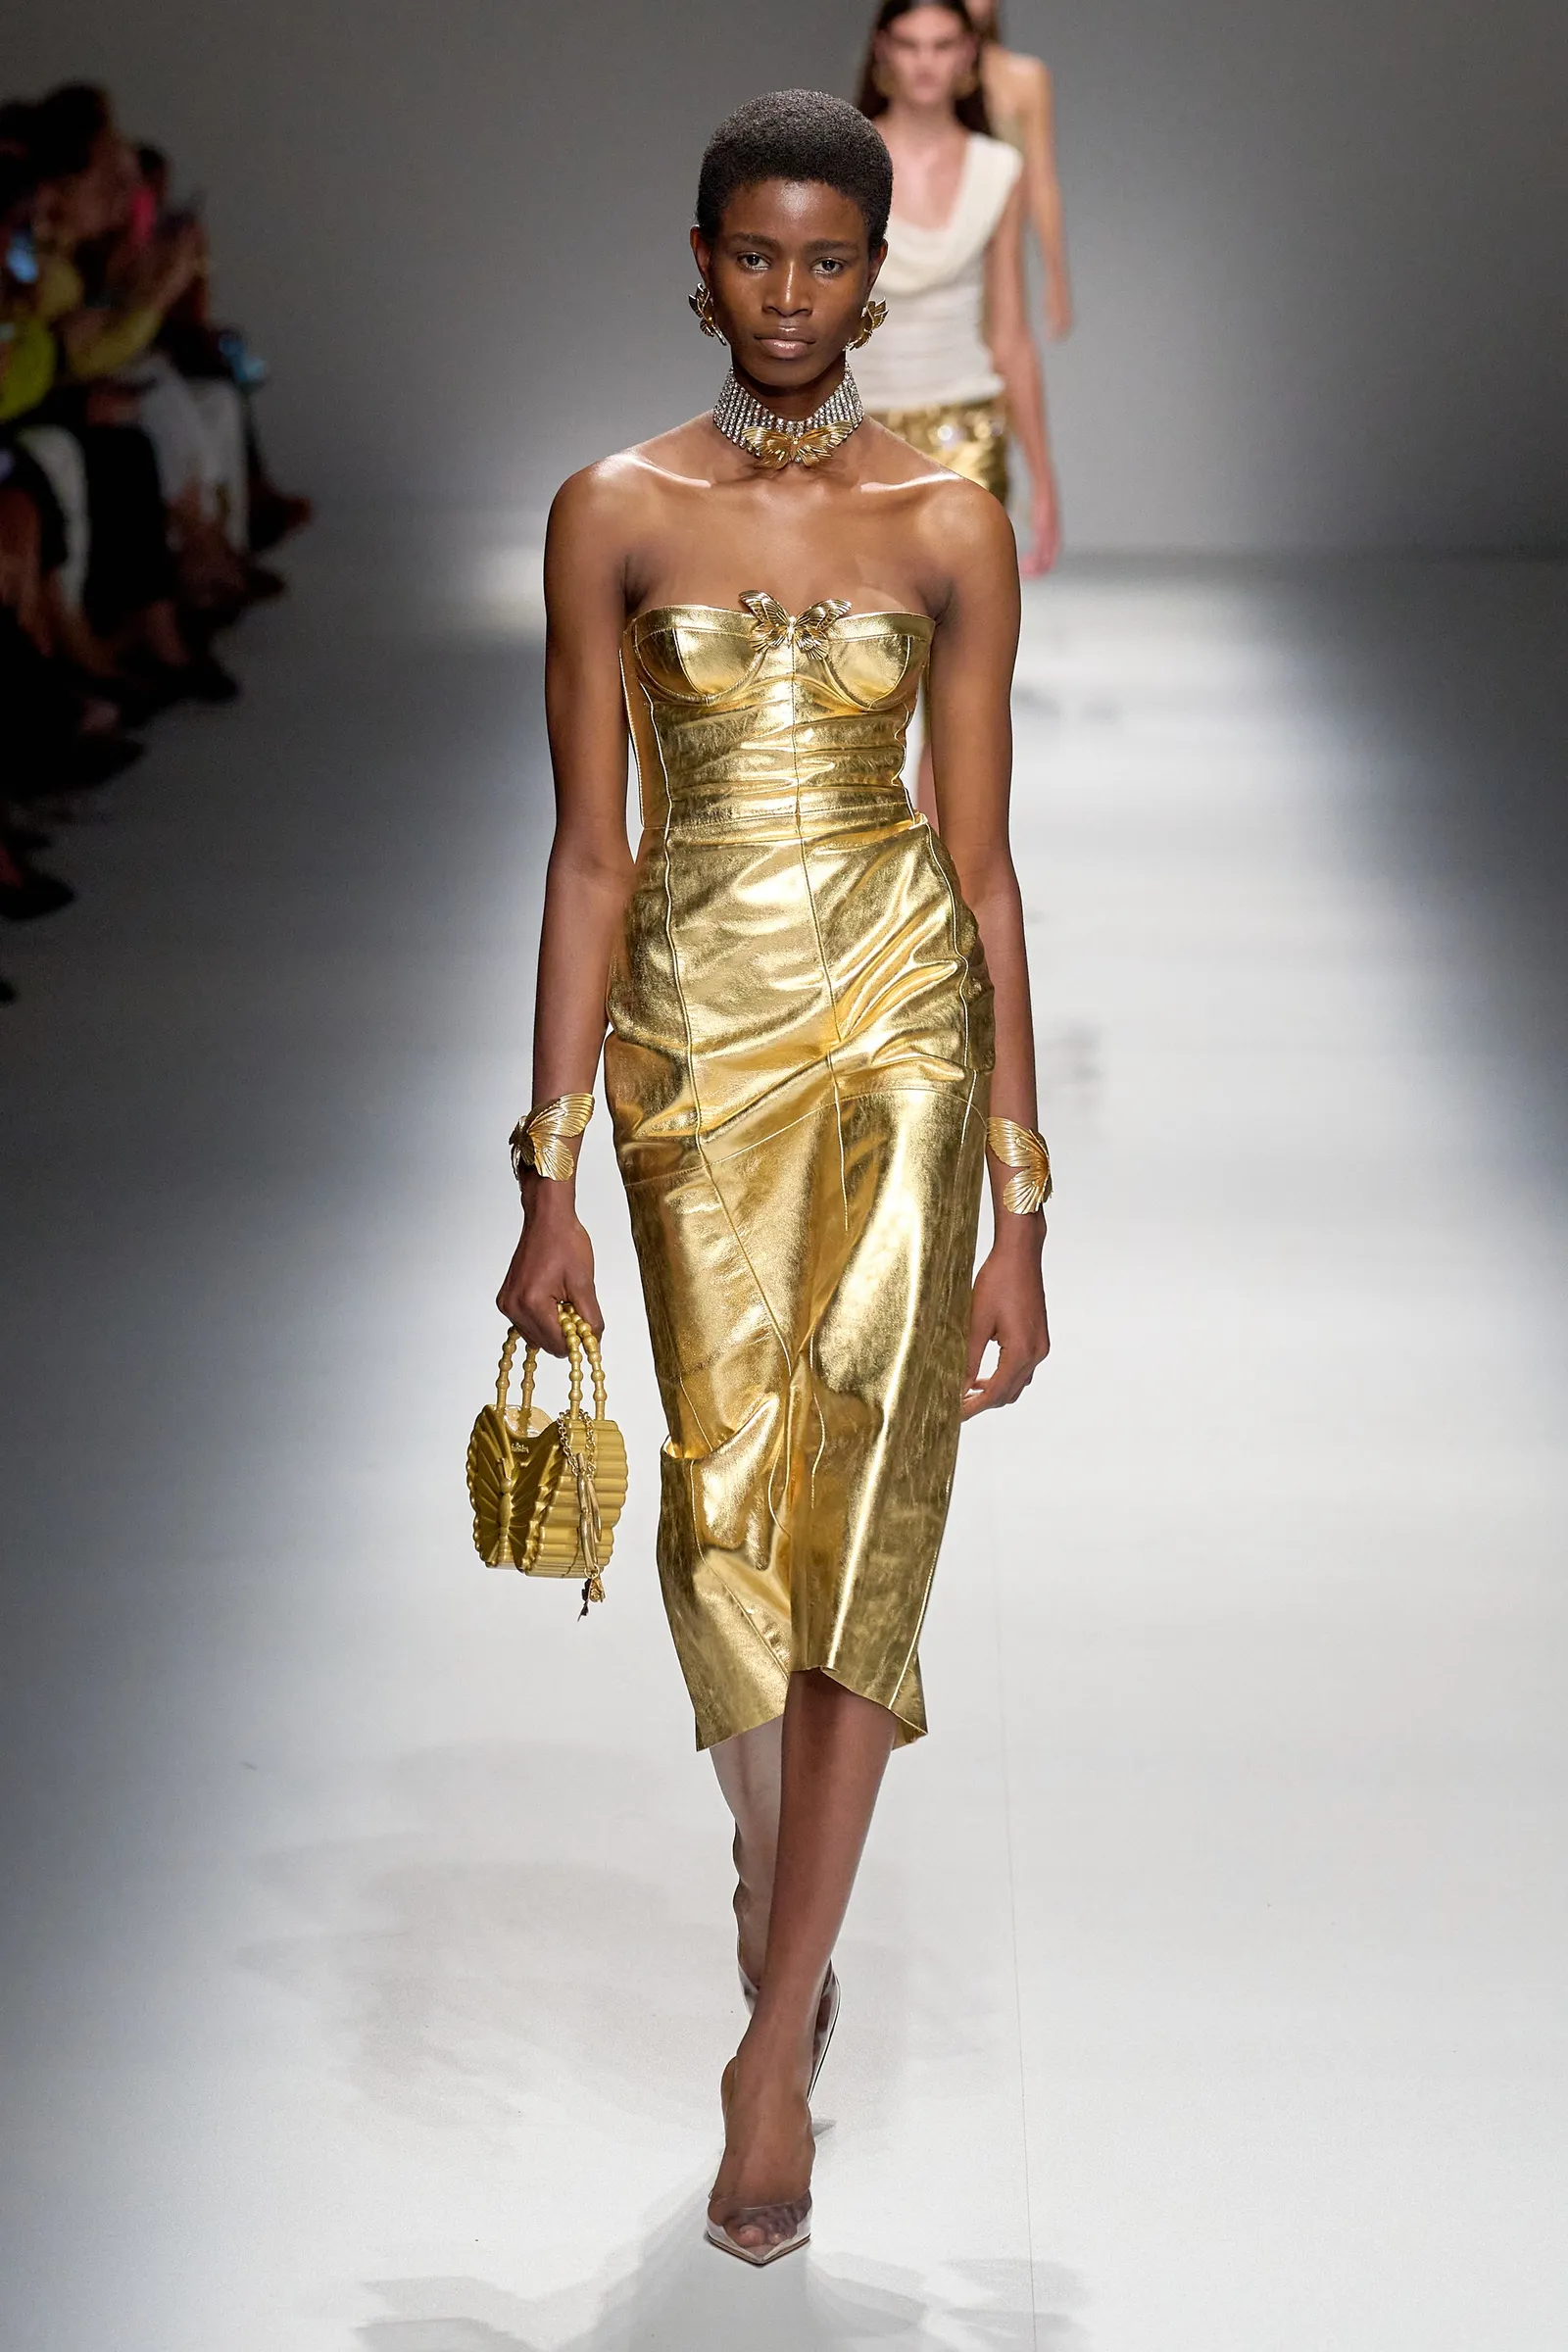 Fashion Week - vestido dourado - metalizado - verão - fashion week - https://stealthelook.com.br